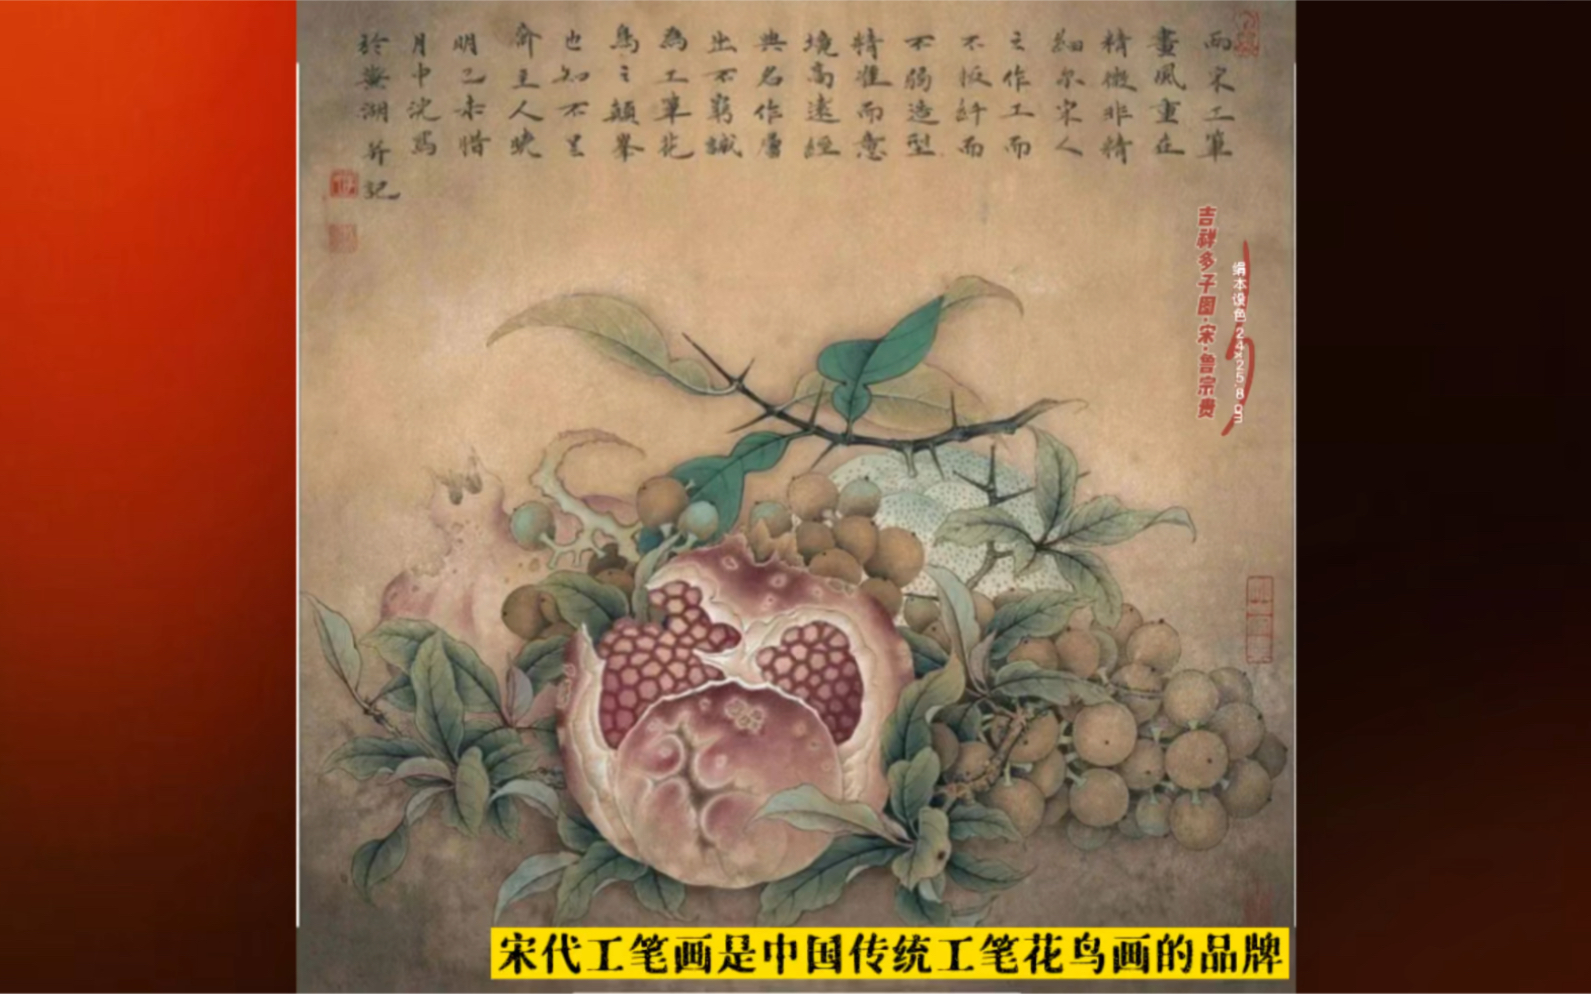 宋代工笔画是中国传统工笔花鸟画的品牌